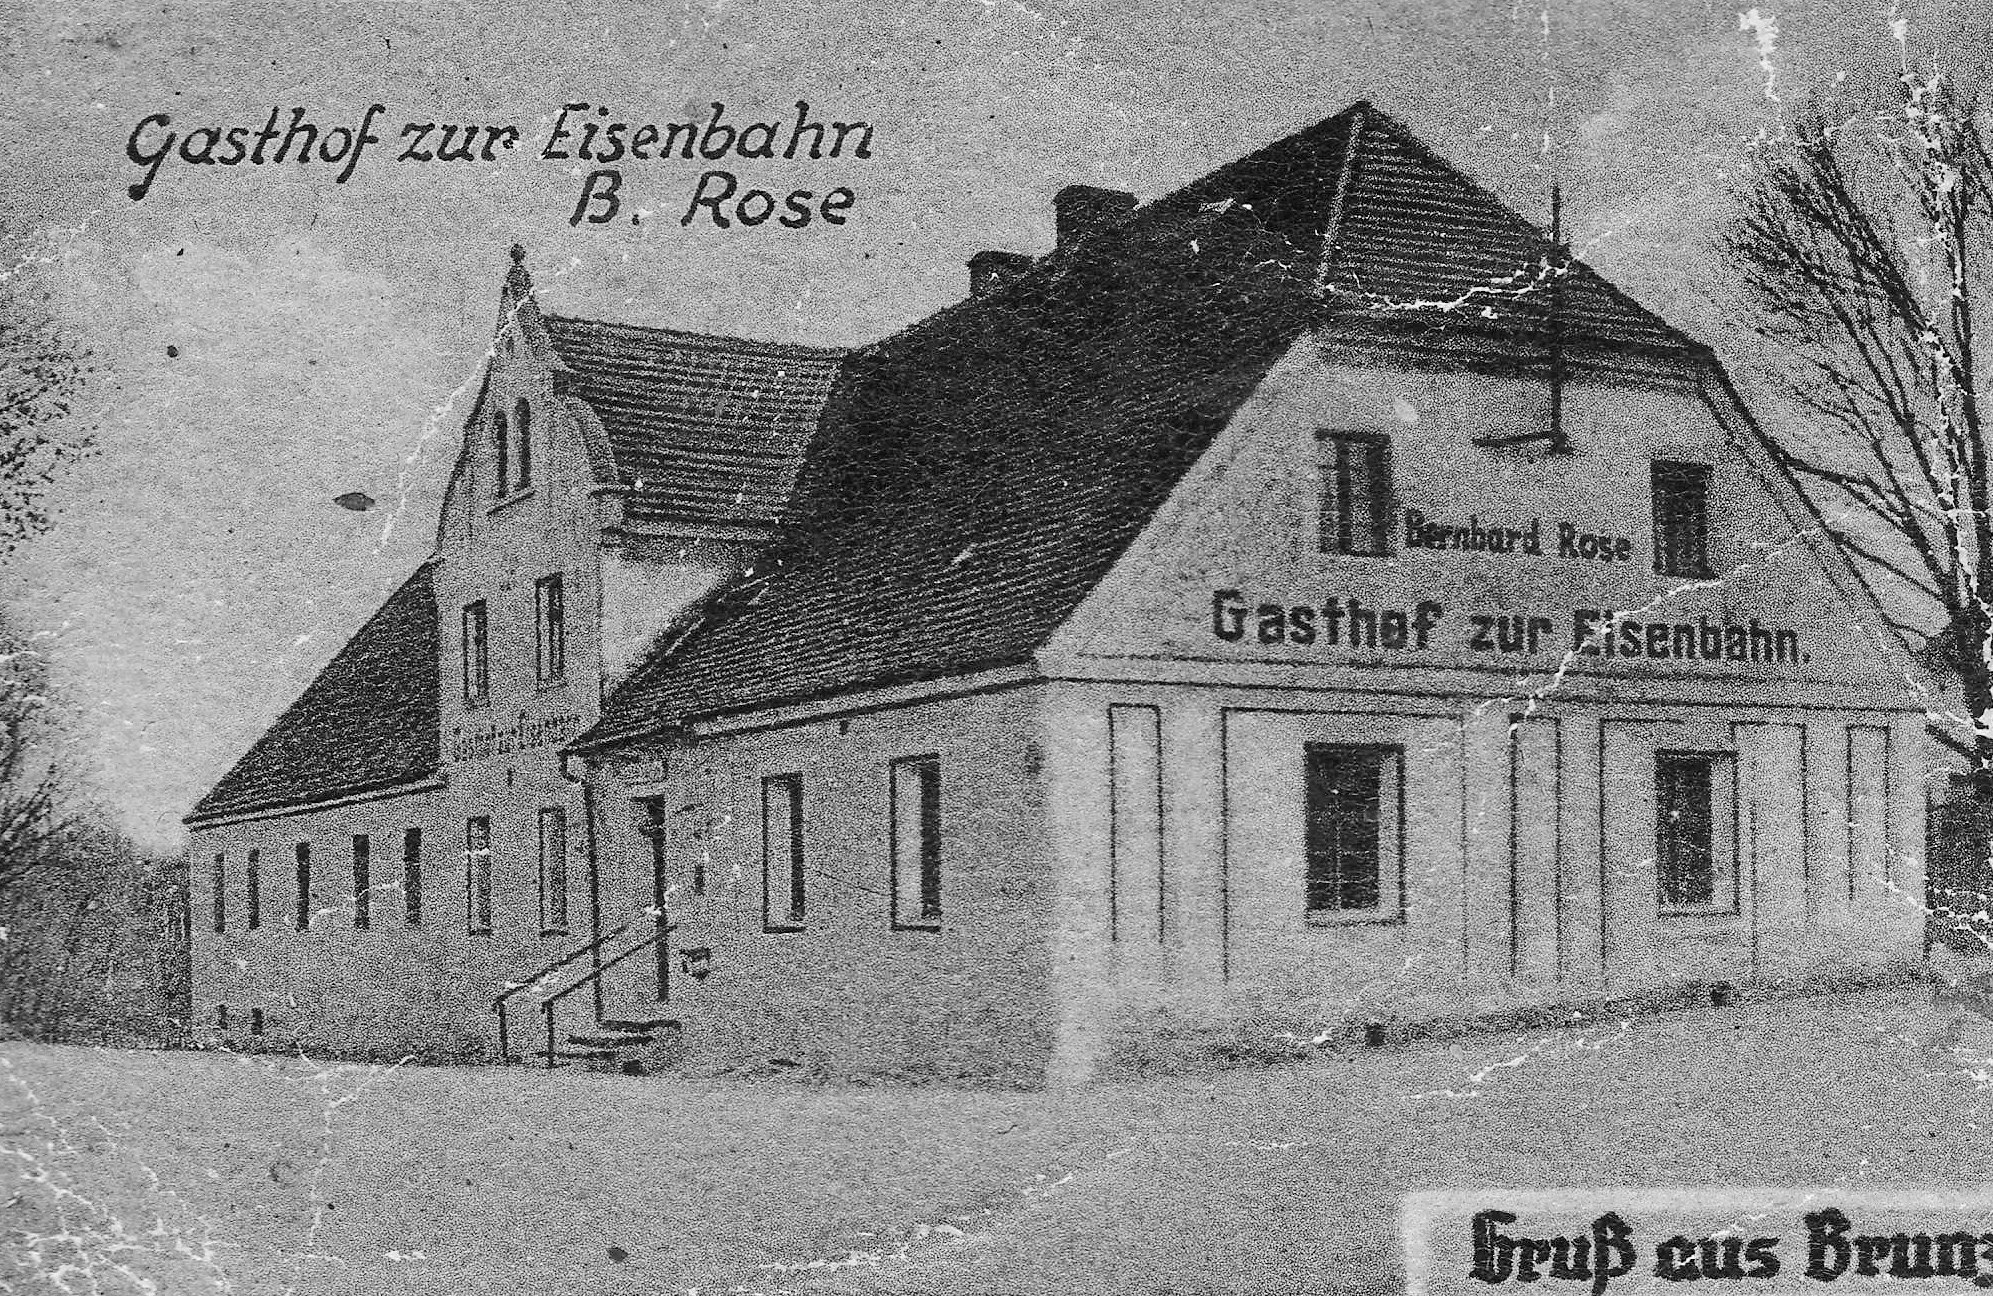 Budynek gocica kolejowego rodziny Rose w Broniszowie. Rodzina Rose prowadzia tu gospod jeszcze przed powstaniem kolei szprotawskiej.